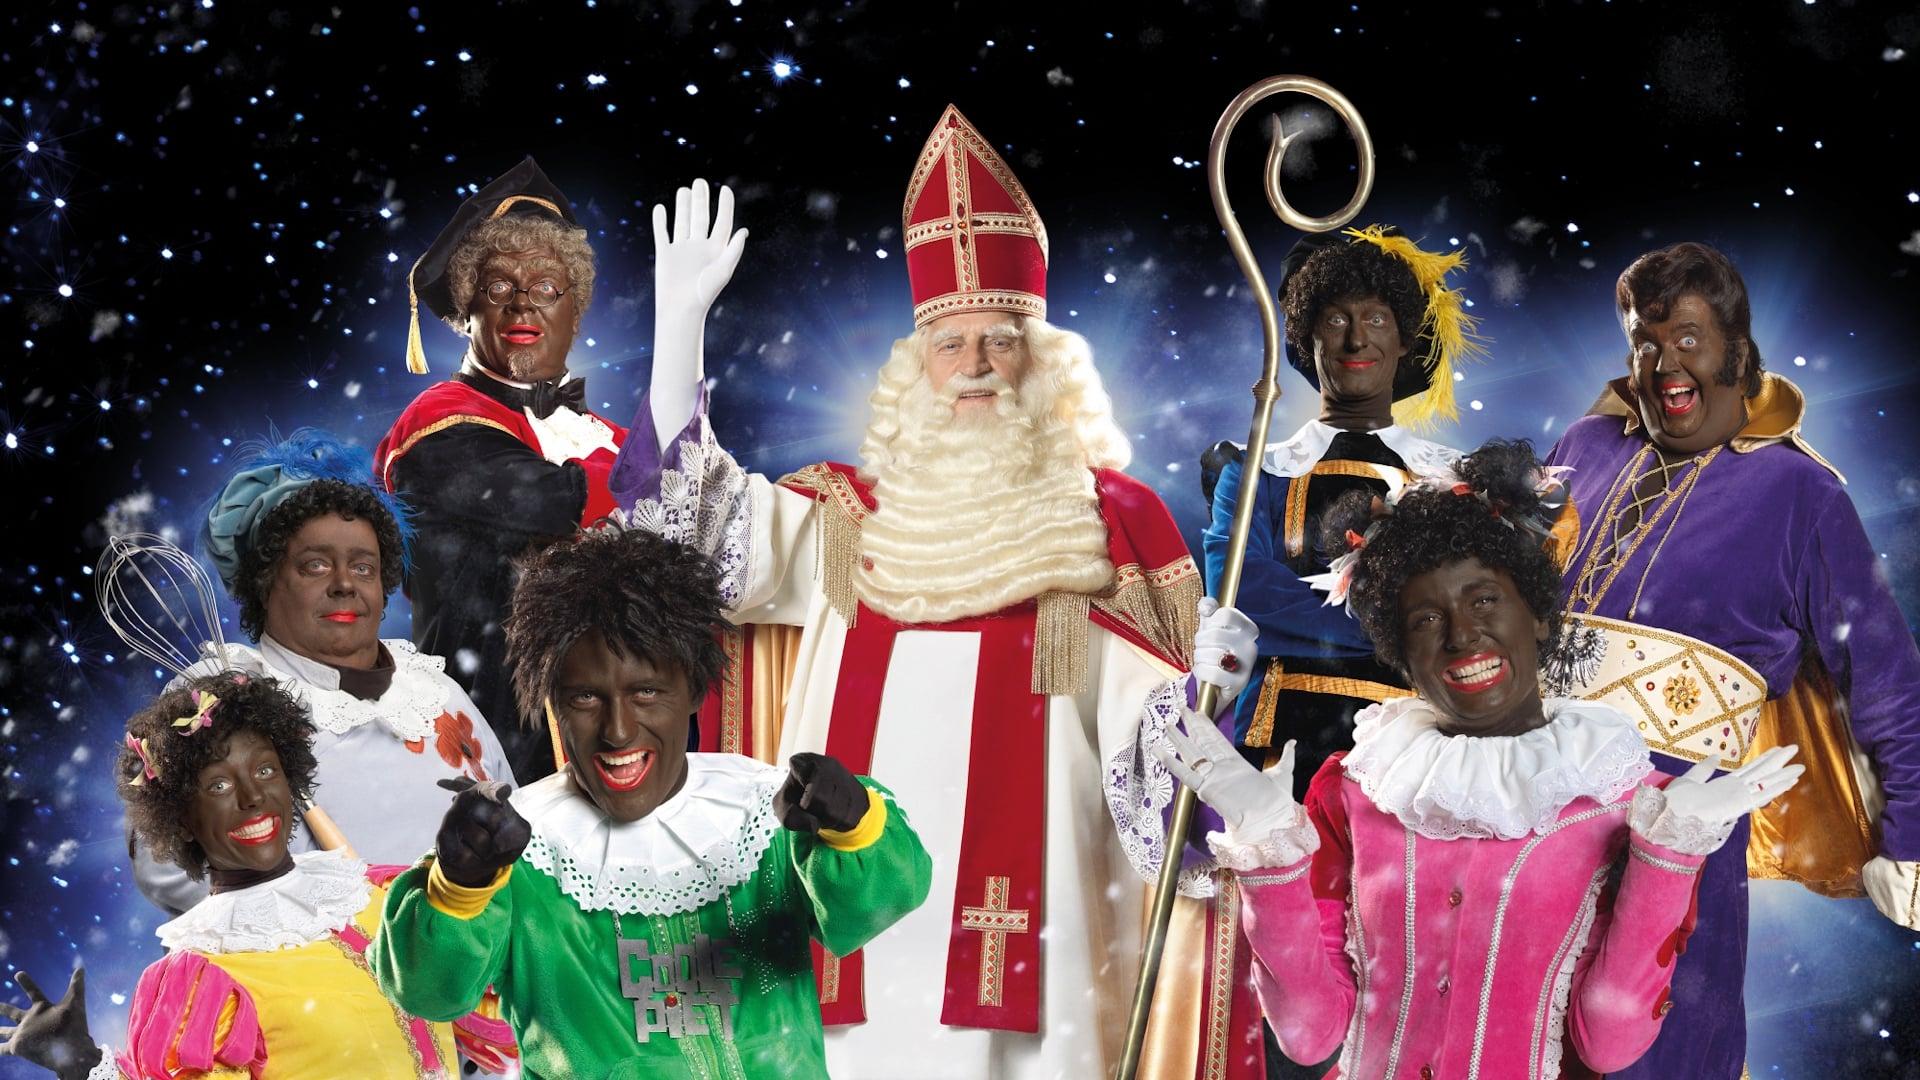 De Club van Sinterklaas & De Verdwenen Schoentjes backdrop